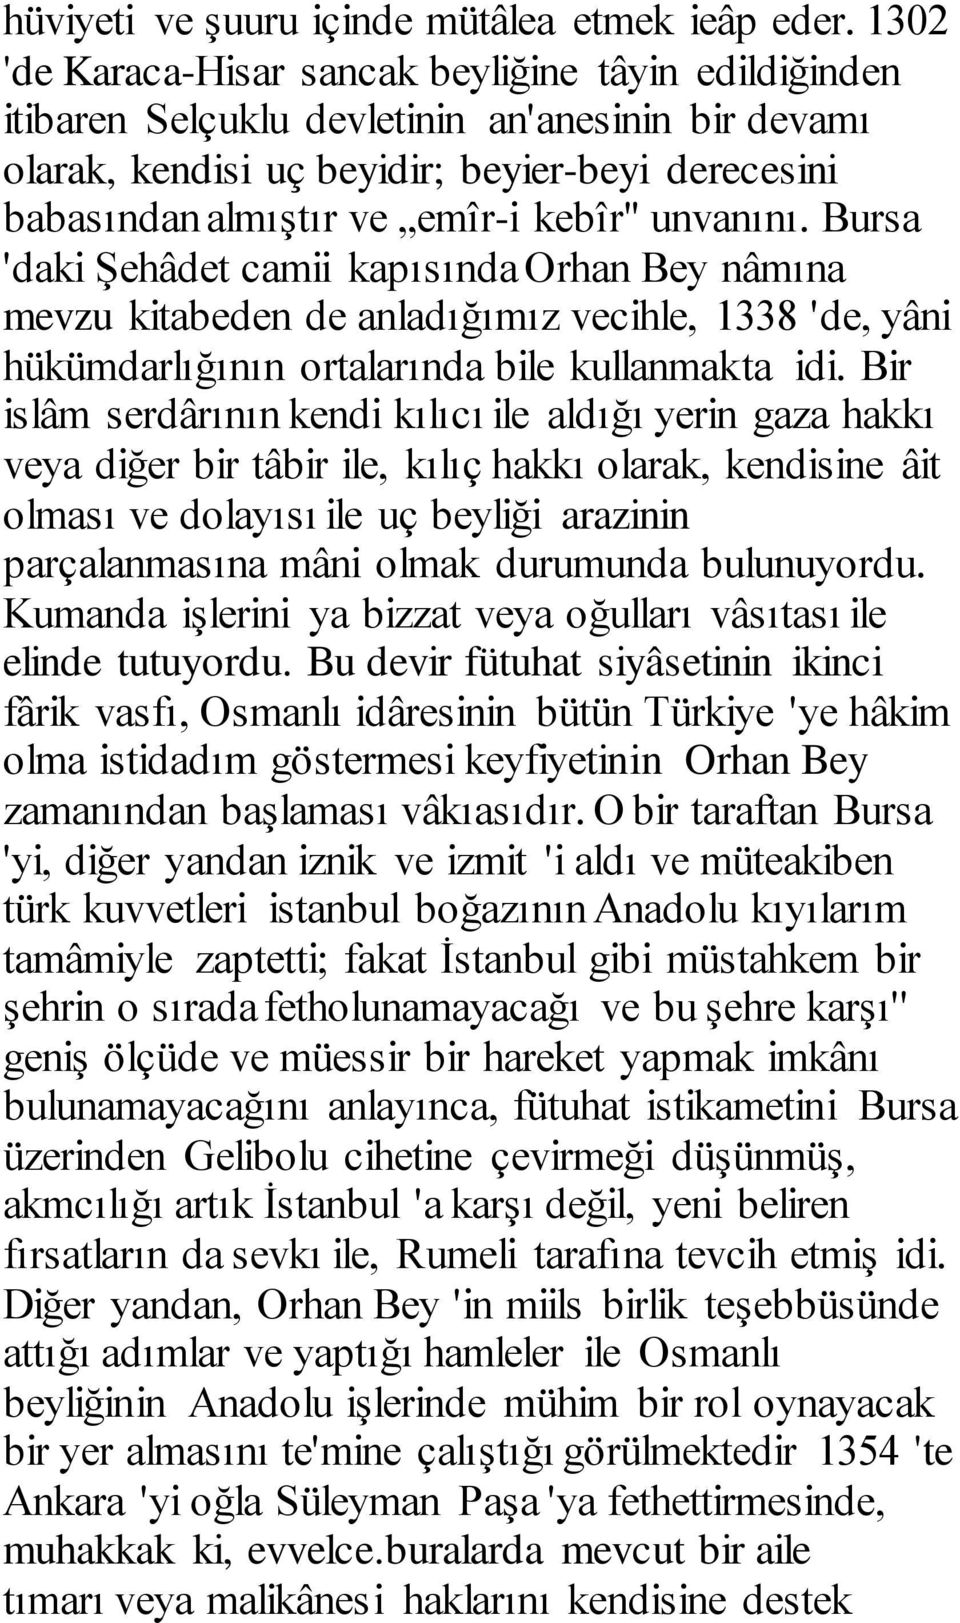 unvanını. Bursa 'daki Şehâdet camii kapısında Orhan Bey nâmına mevzu kitabeden de anladığımız vecihle, 1338 'de, yâni hükümdarlığının ortalarında bile kullanmakta idi.